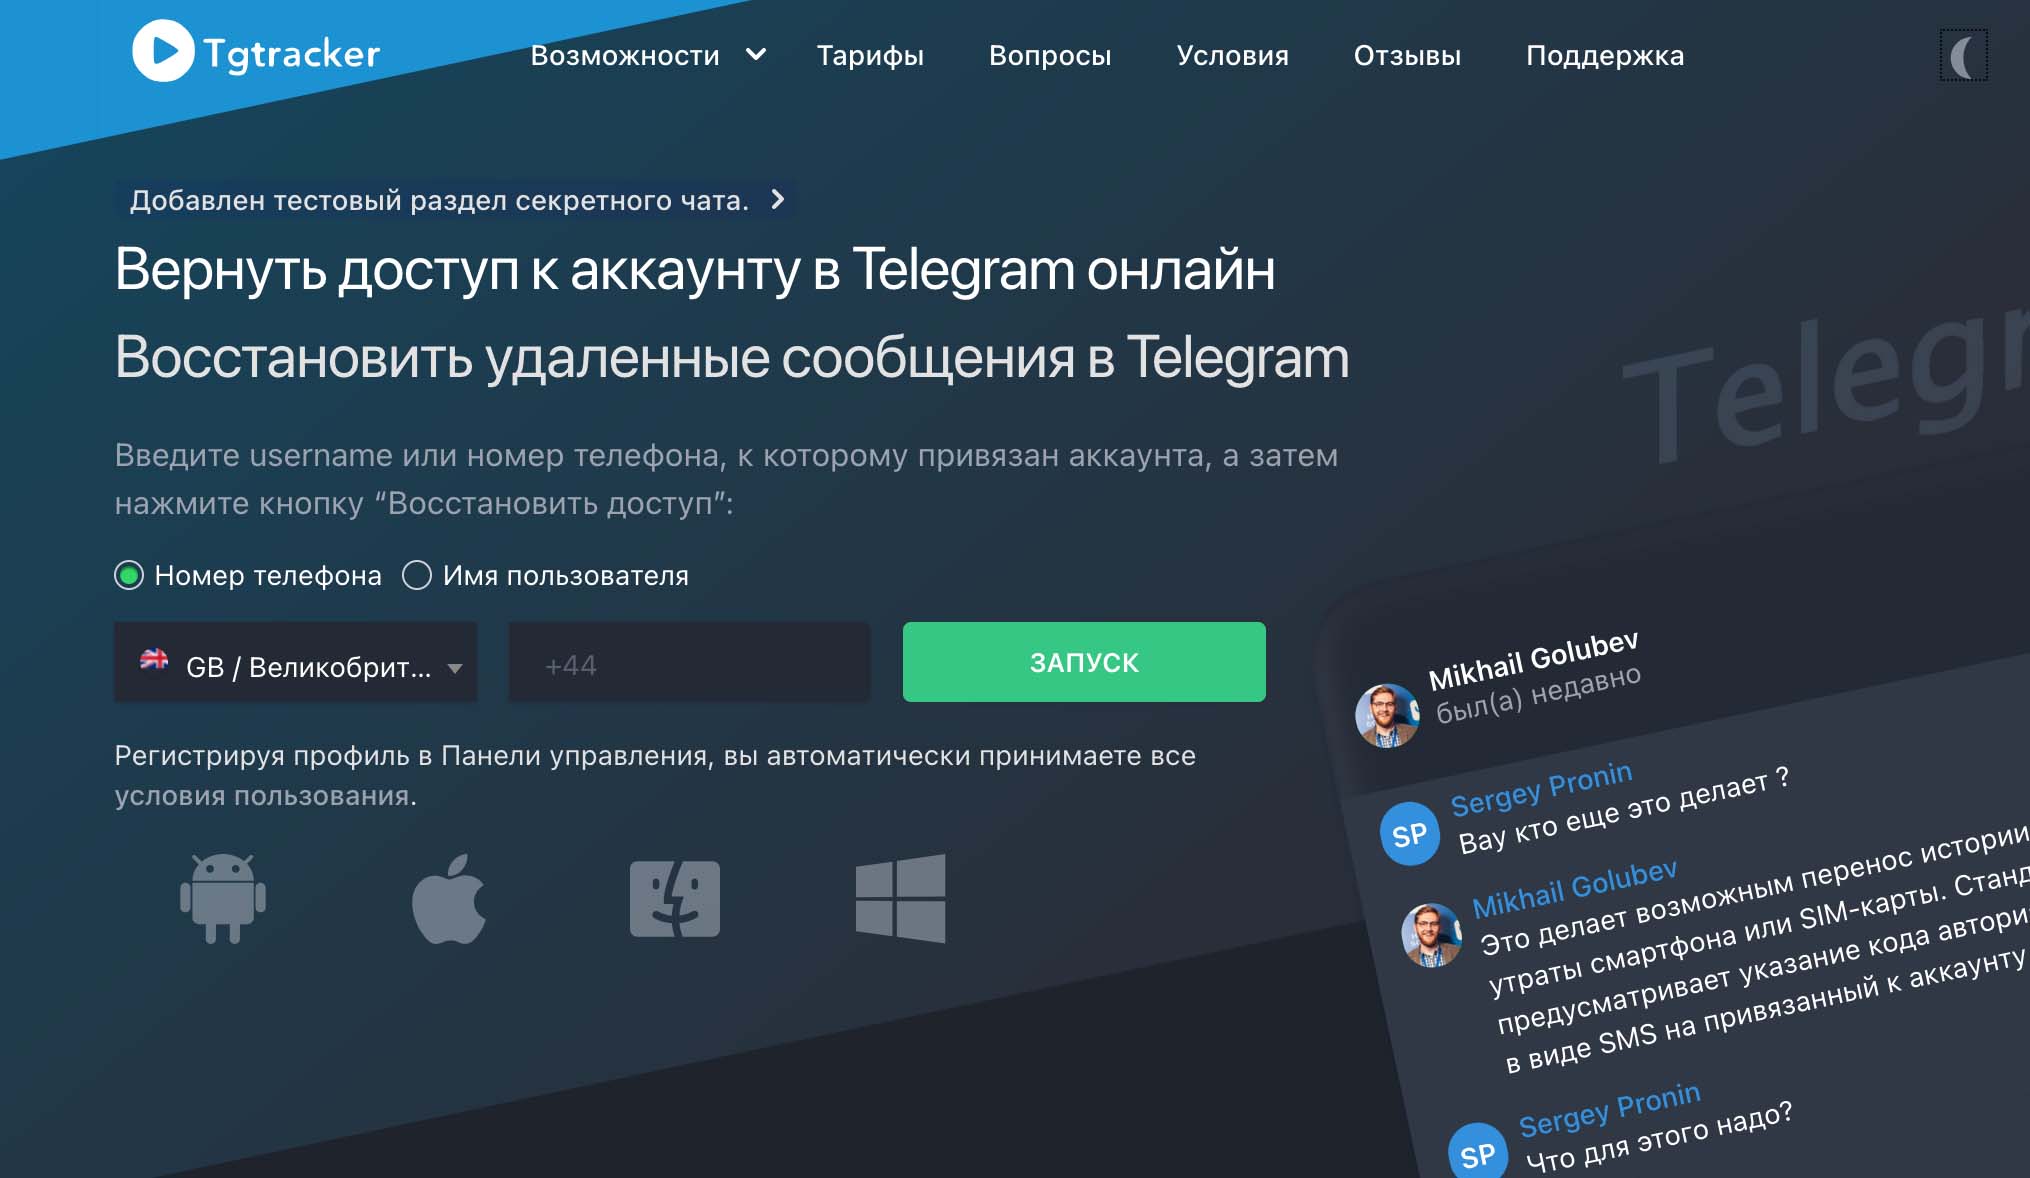 Как с помощью Tgtracker отследить активность пользователя в Телеграм